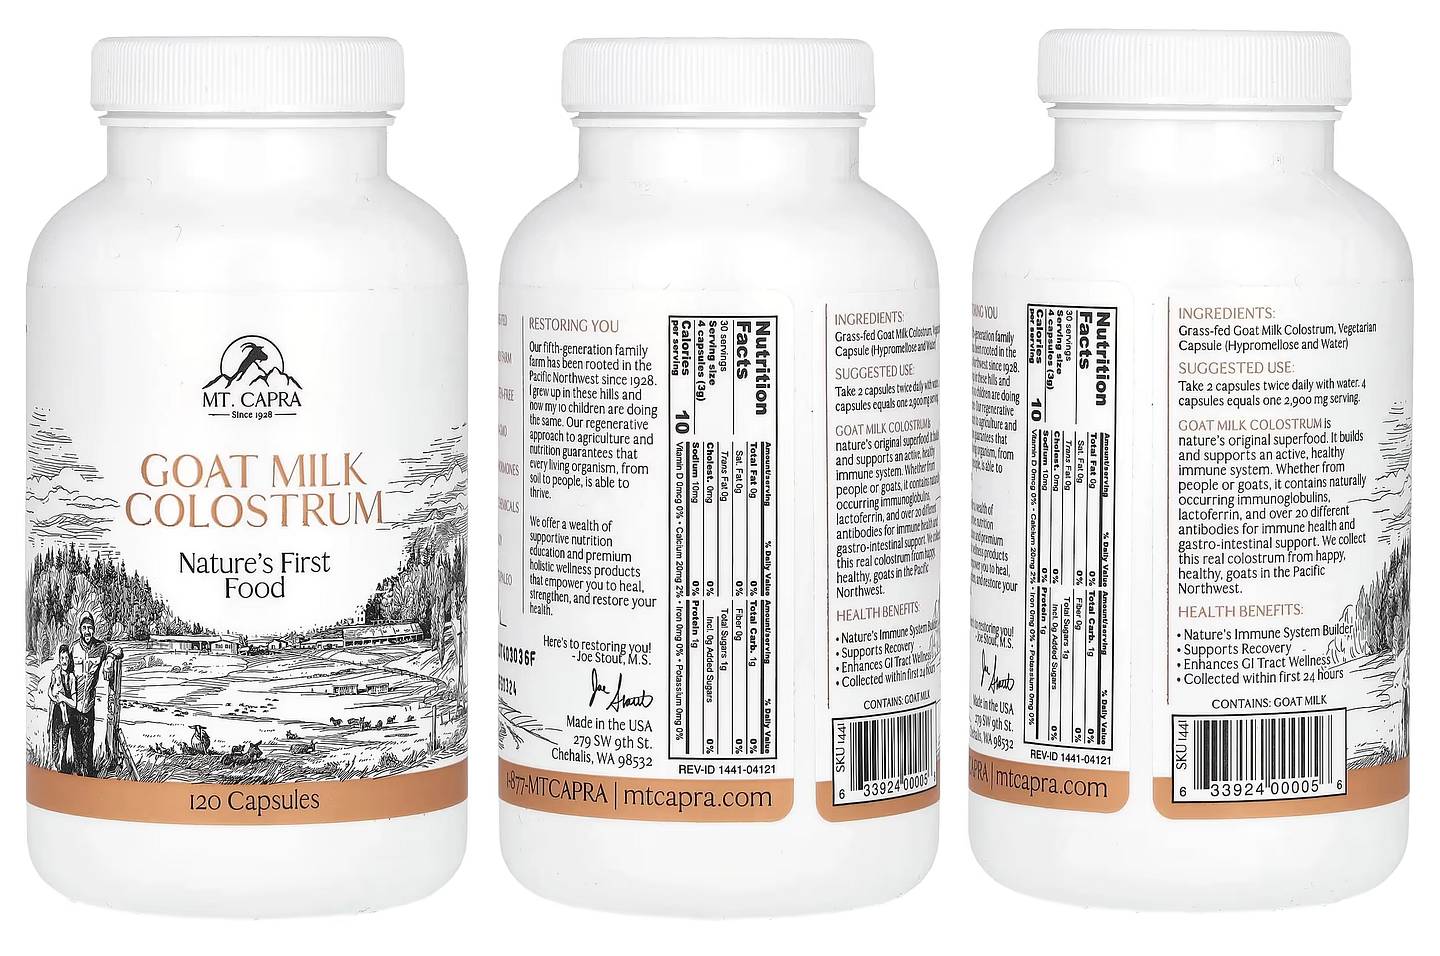 Mt. Capra, Goat Milk Colostrum packaging